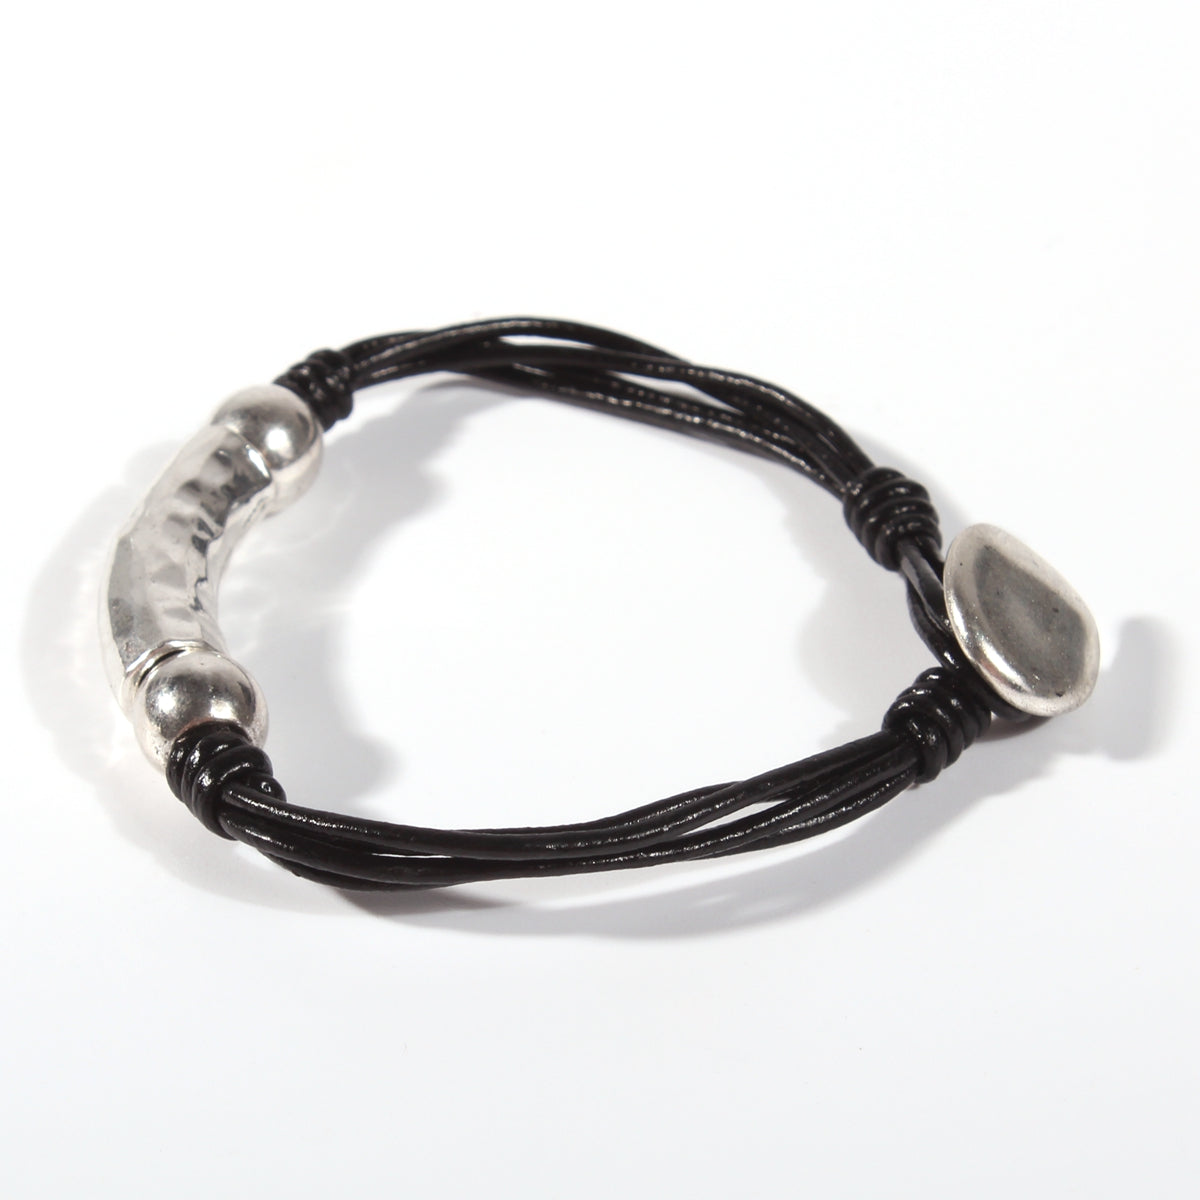 Genuine leather handmade women's bracelet MBR-14